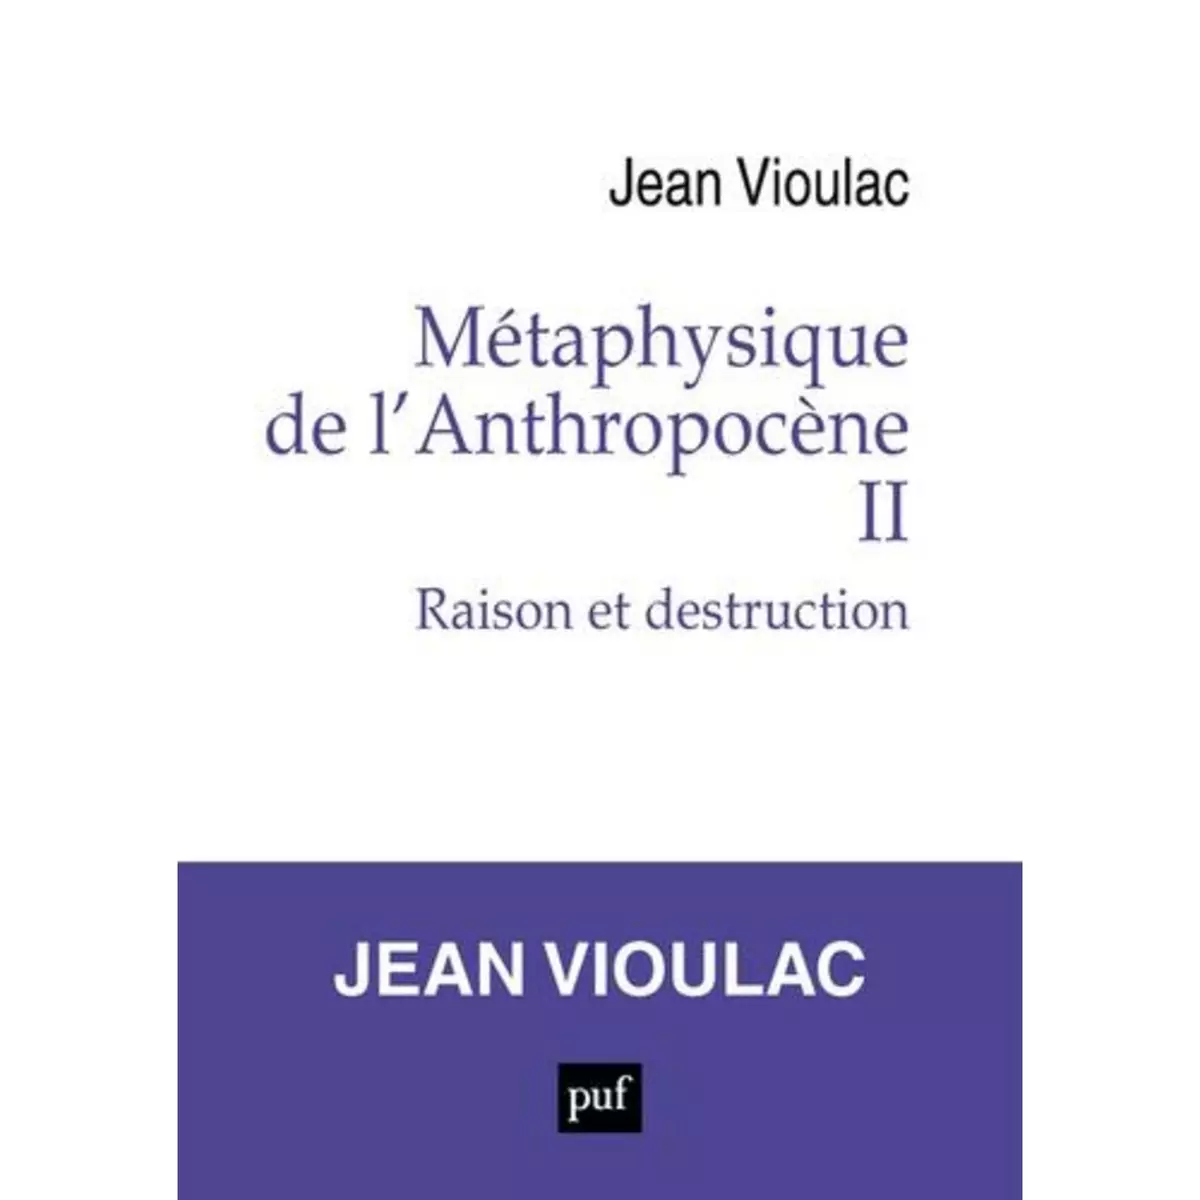  METAPHYSIQUE DE L'ANTHROPOCENE. TOME 2, RAISON ET DESTRUCTION, Vioulac Jean